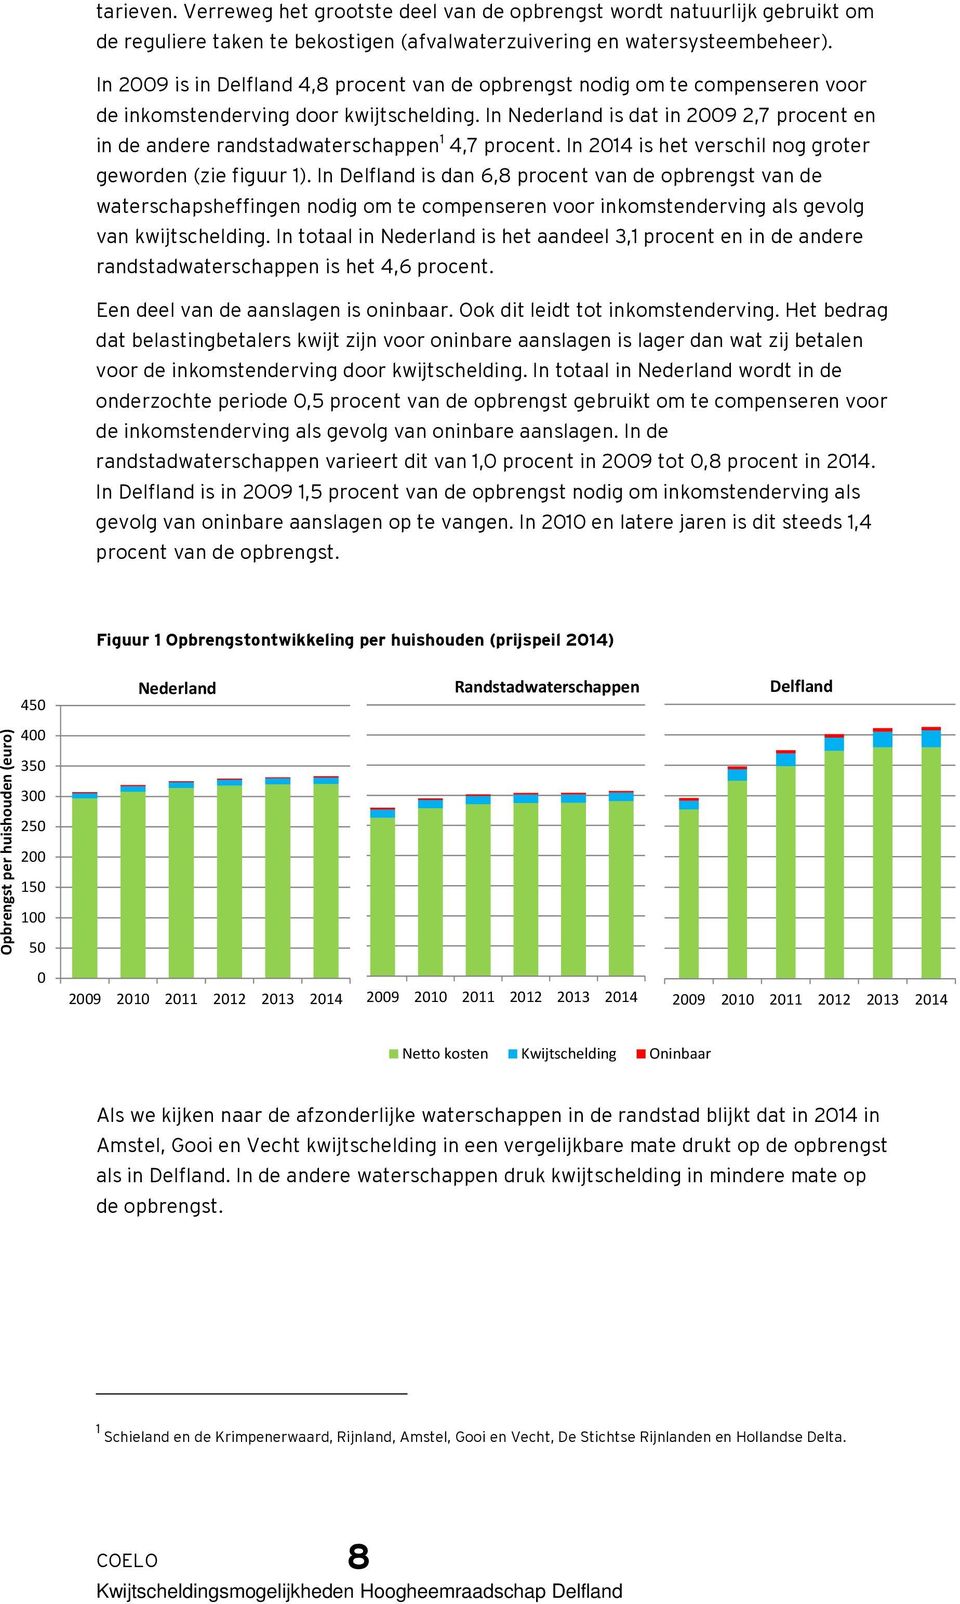 In Nederland is dat in 2009 2,7 procent en in de andere randstadwaterschappen 1 4,7 procent. In 2014 is het verschil nog groter geworden (zie figuur 1).